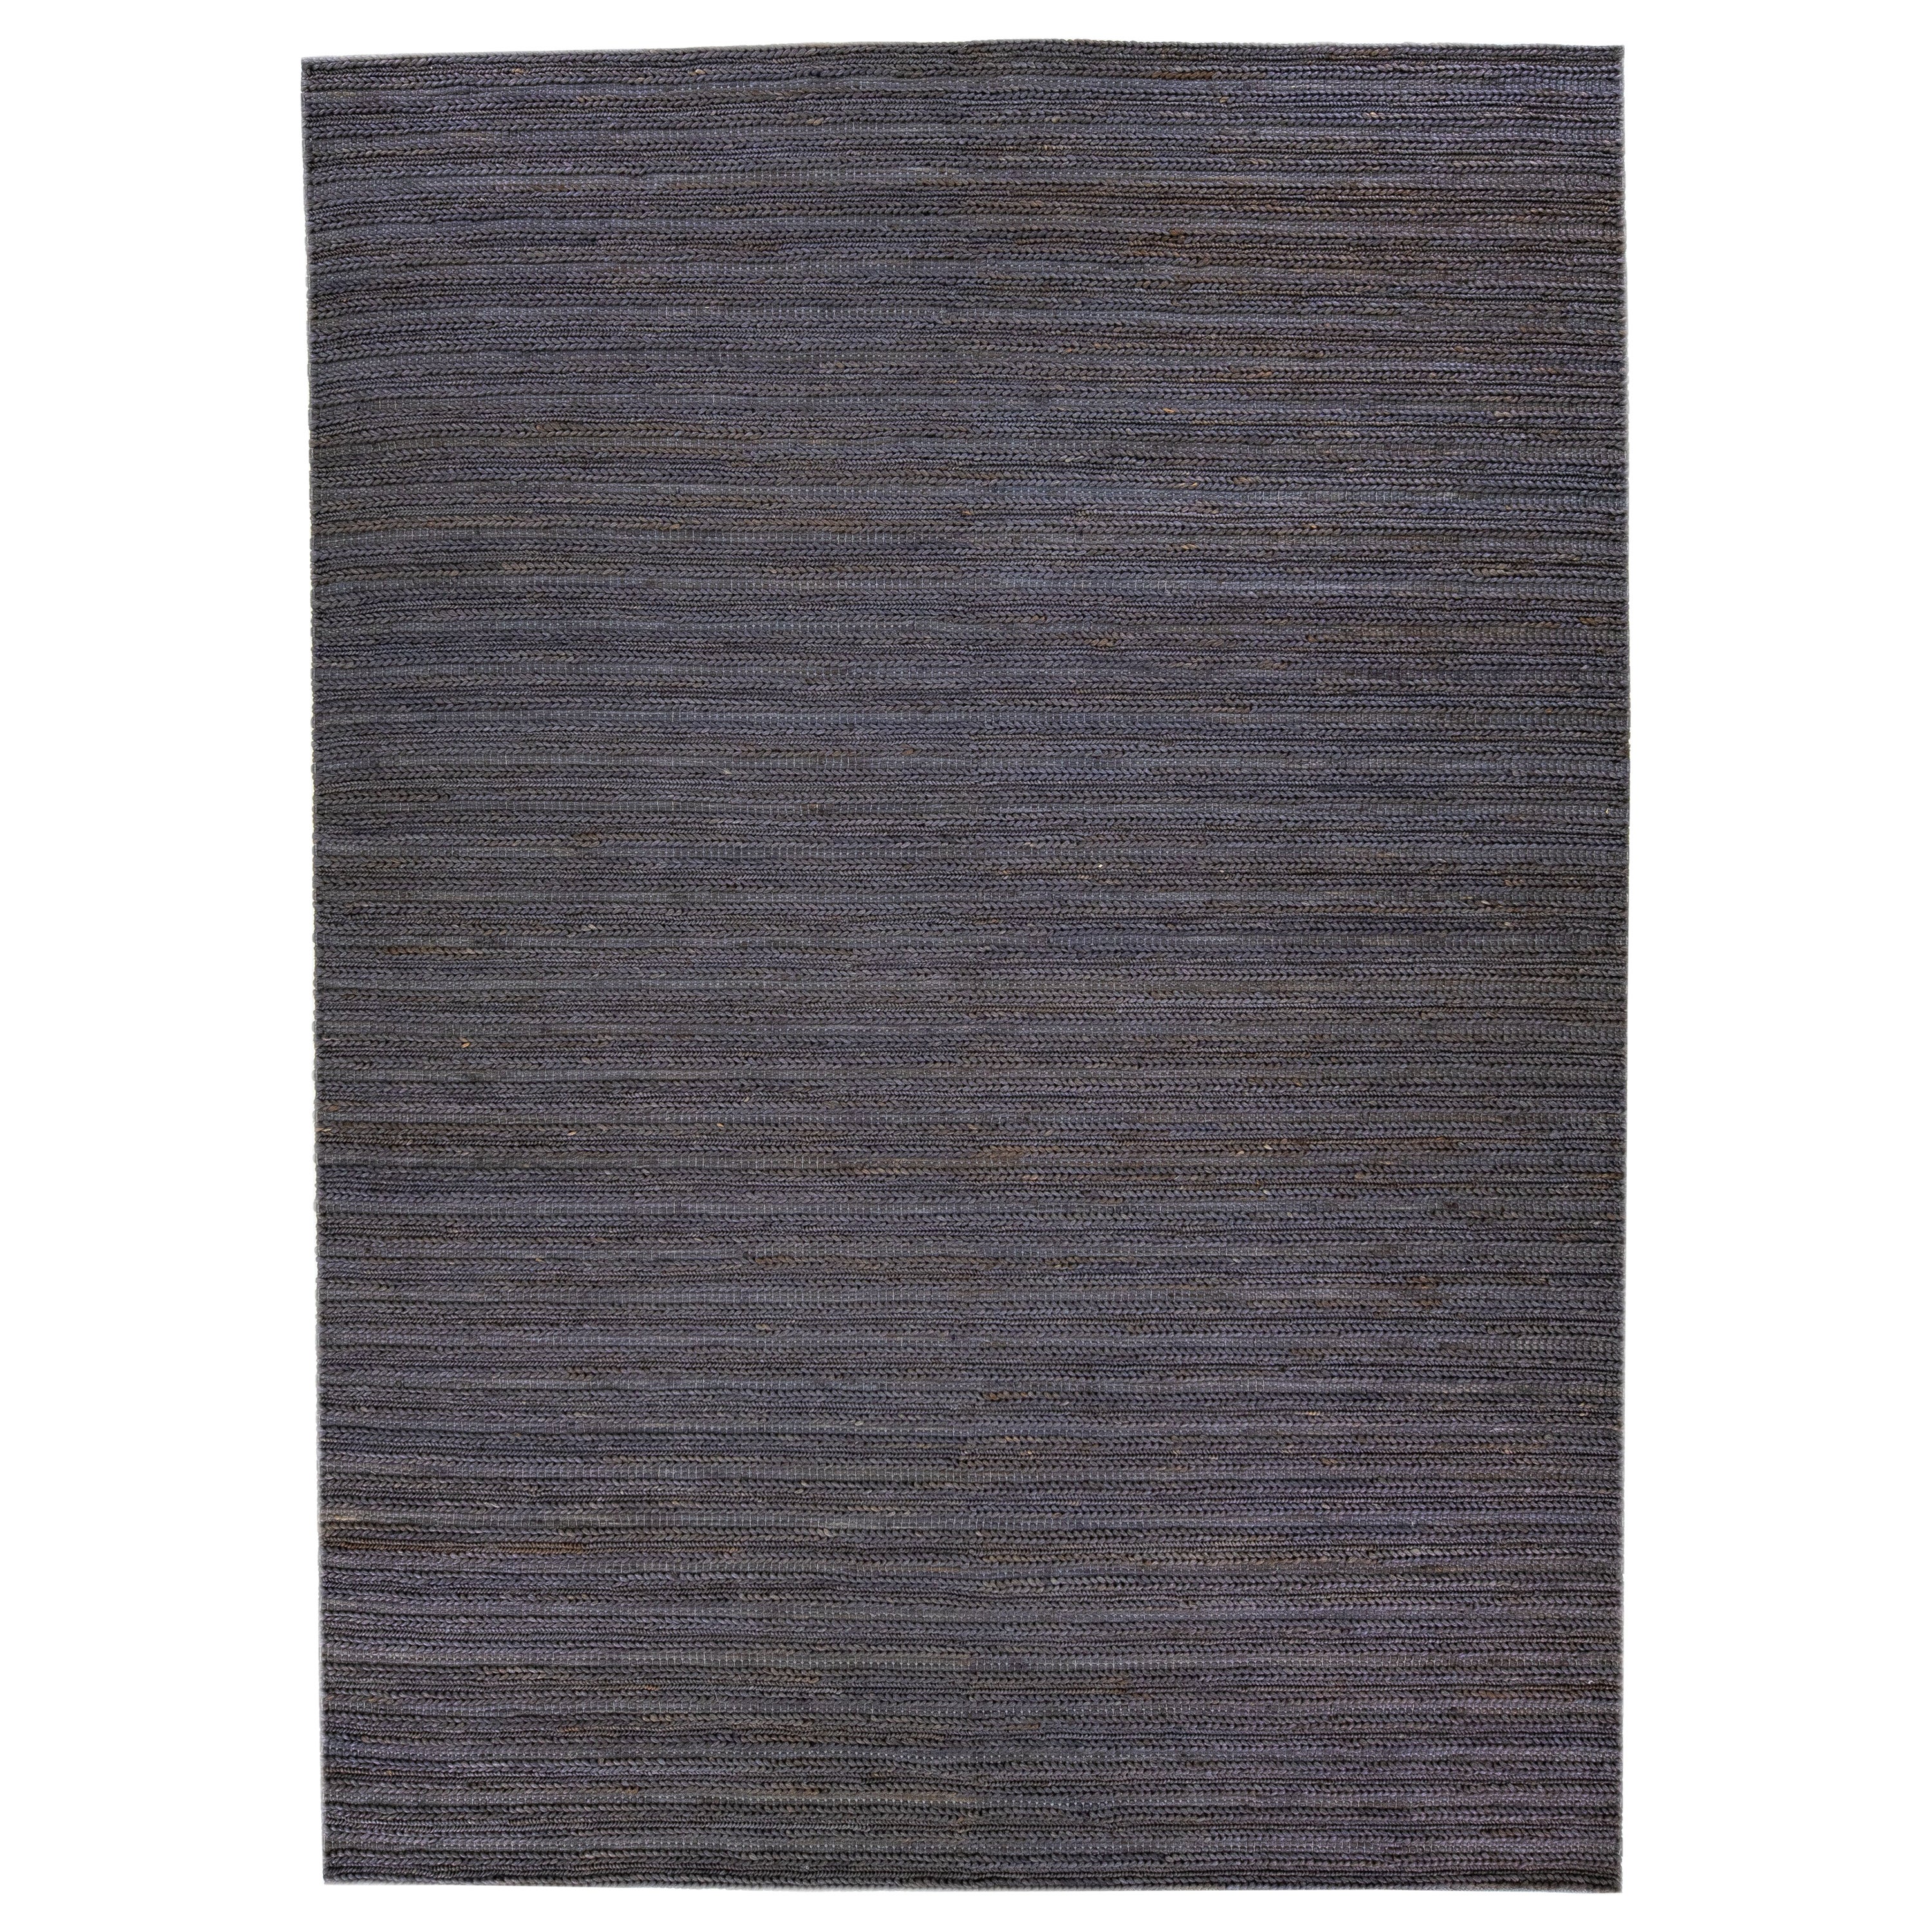 Tapis moderne en jute et coton à texture naturelle tissé à la main, de couleur gris-onyx